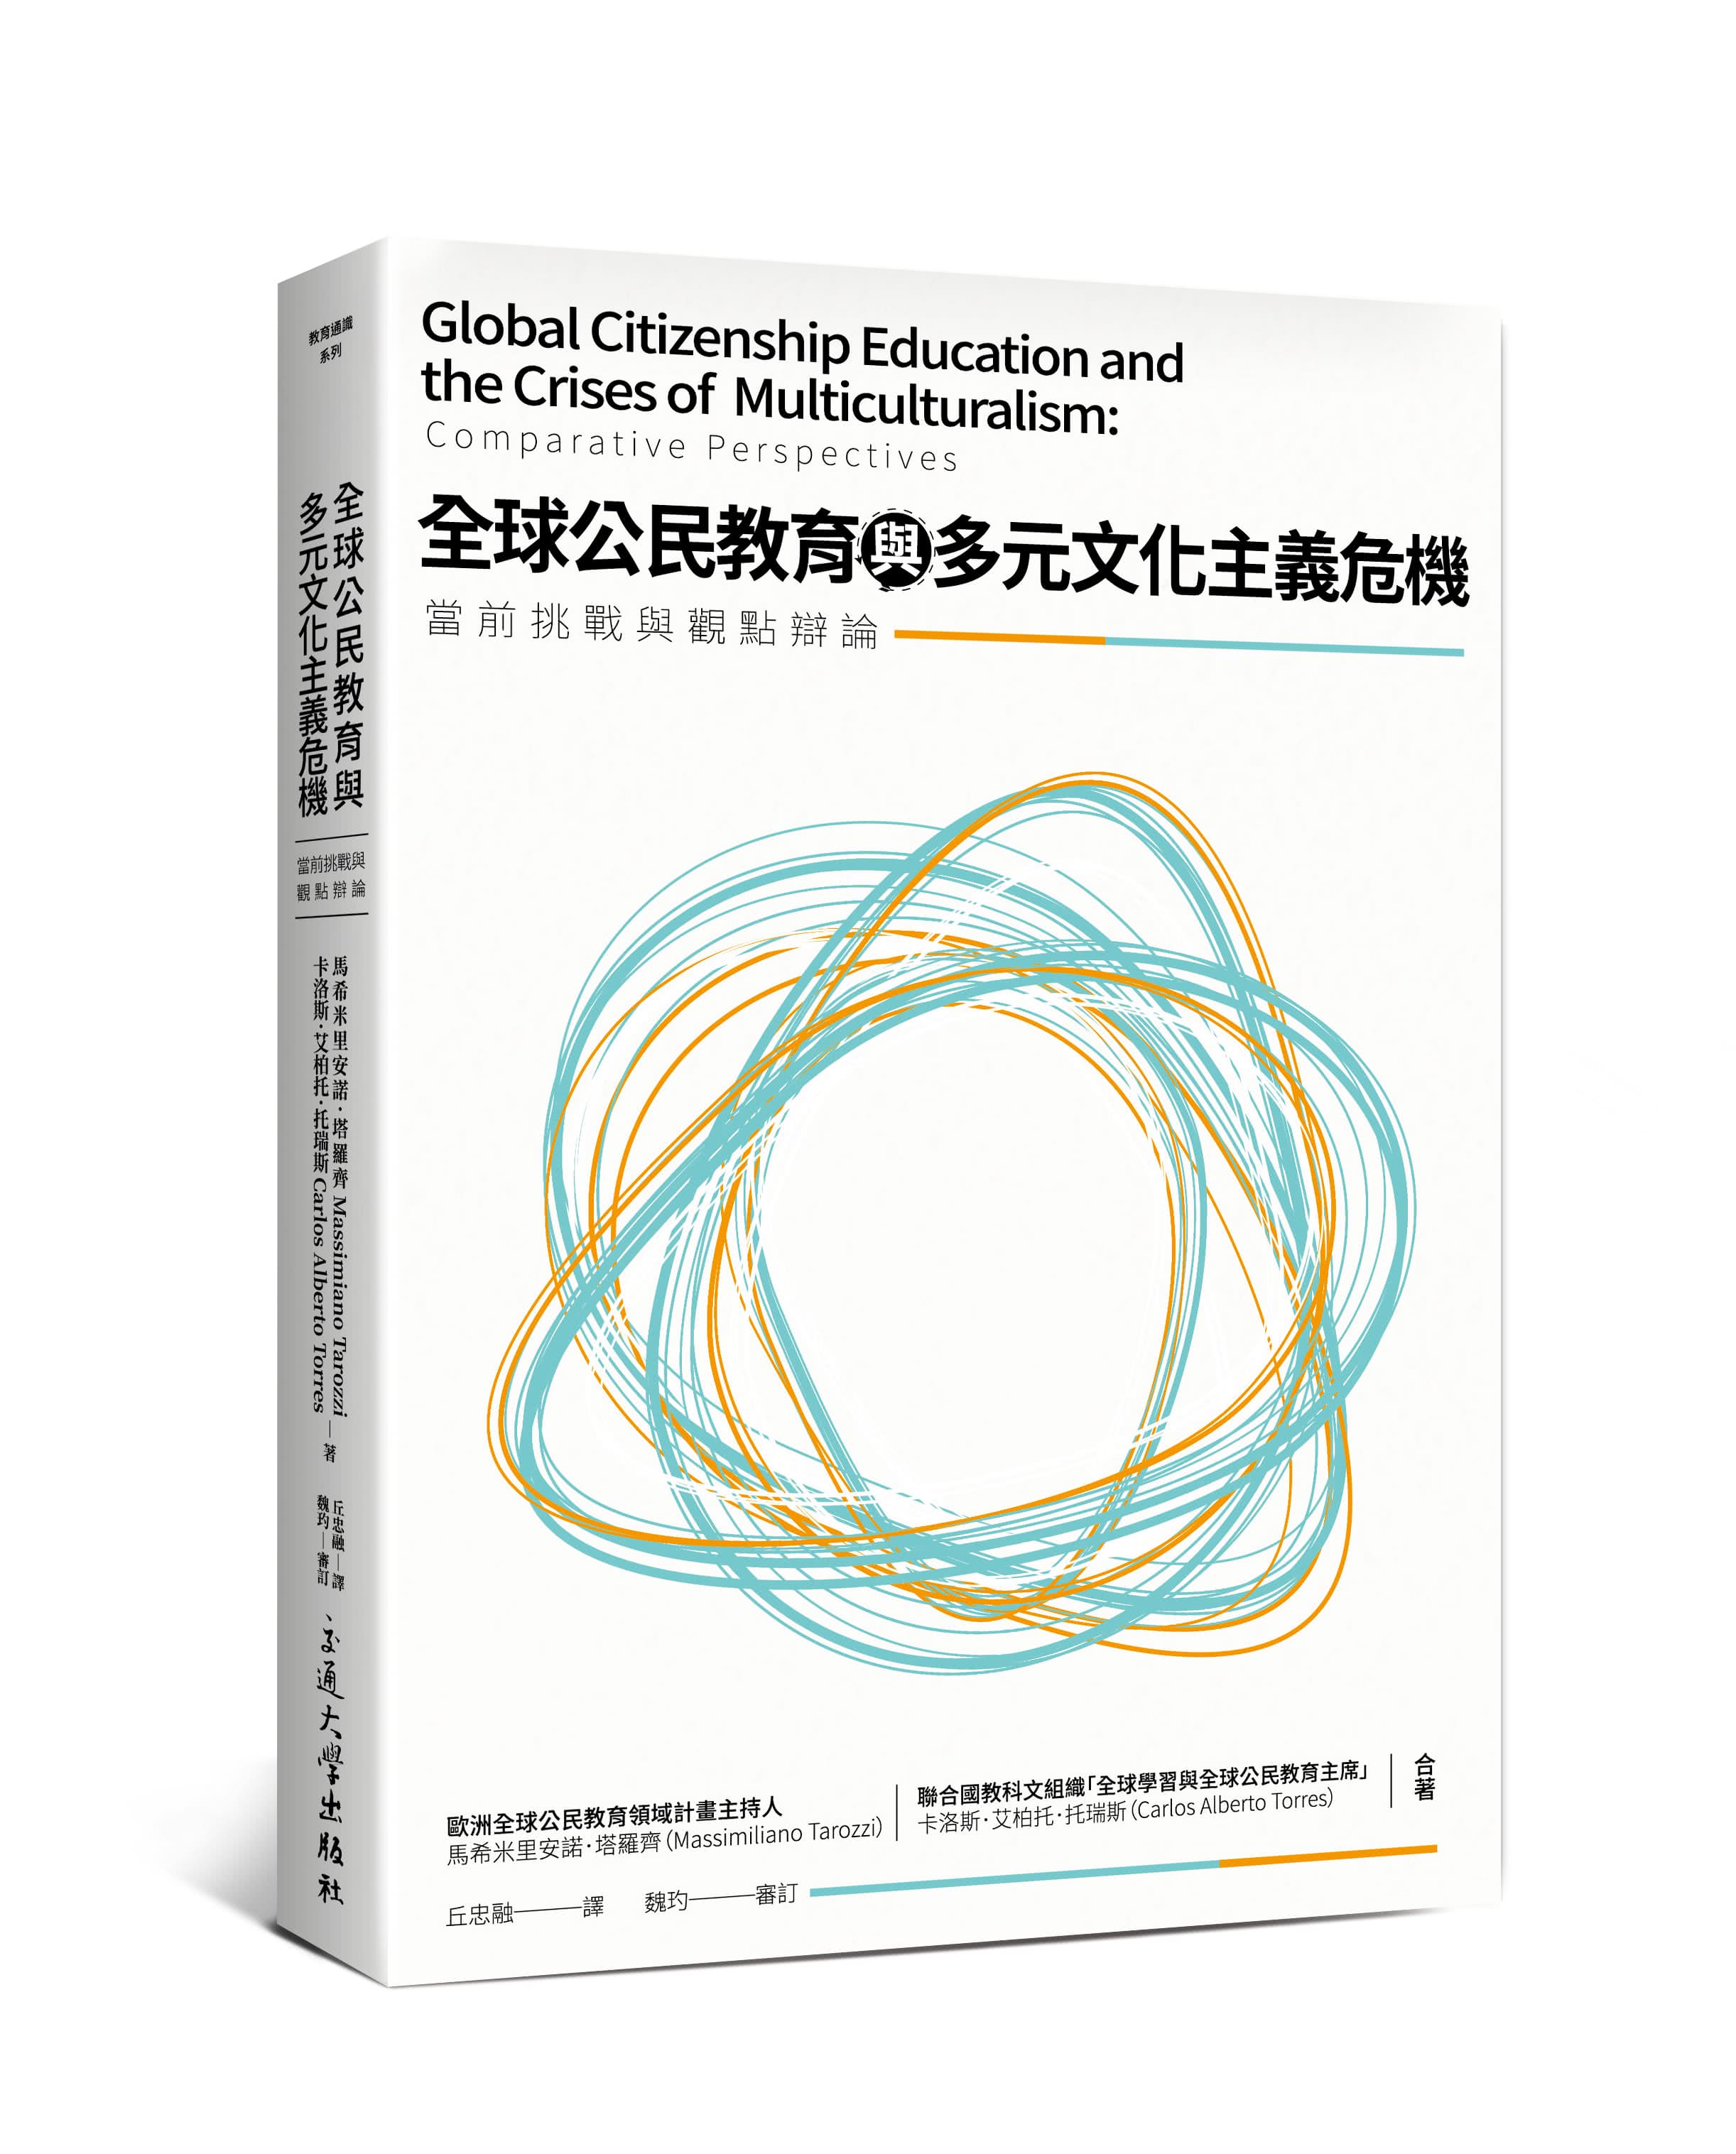 全球公民教育與多元文化主義危機：當前挑戰與觀點辯論